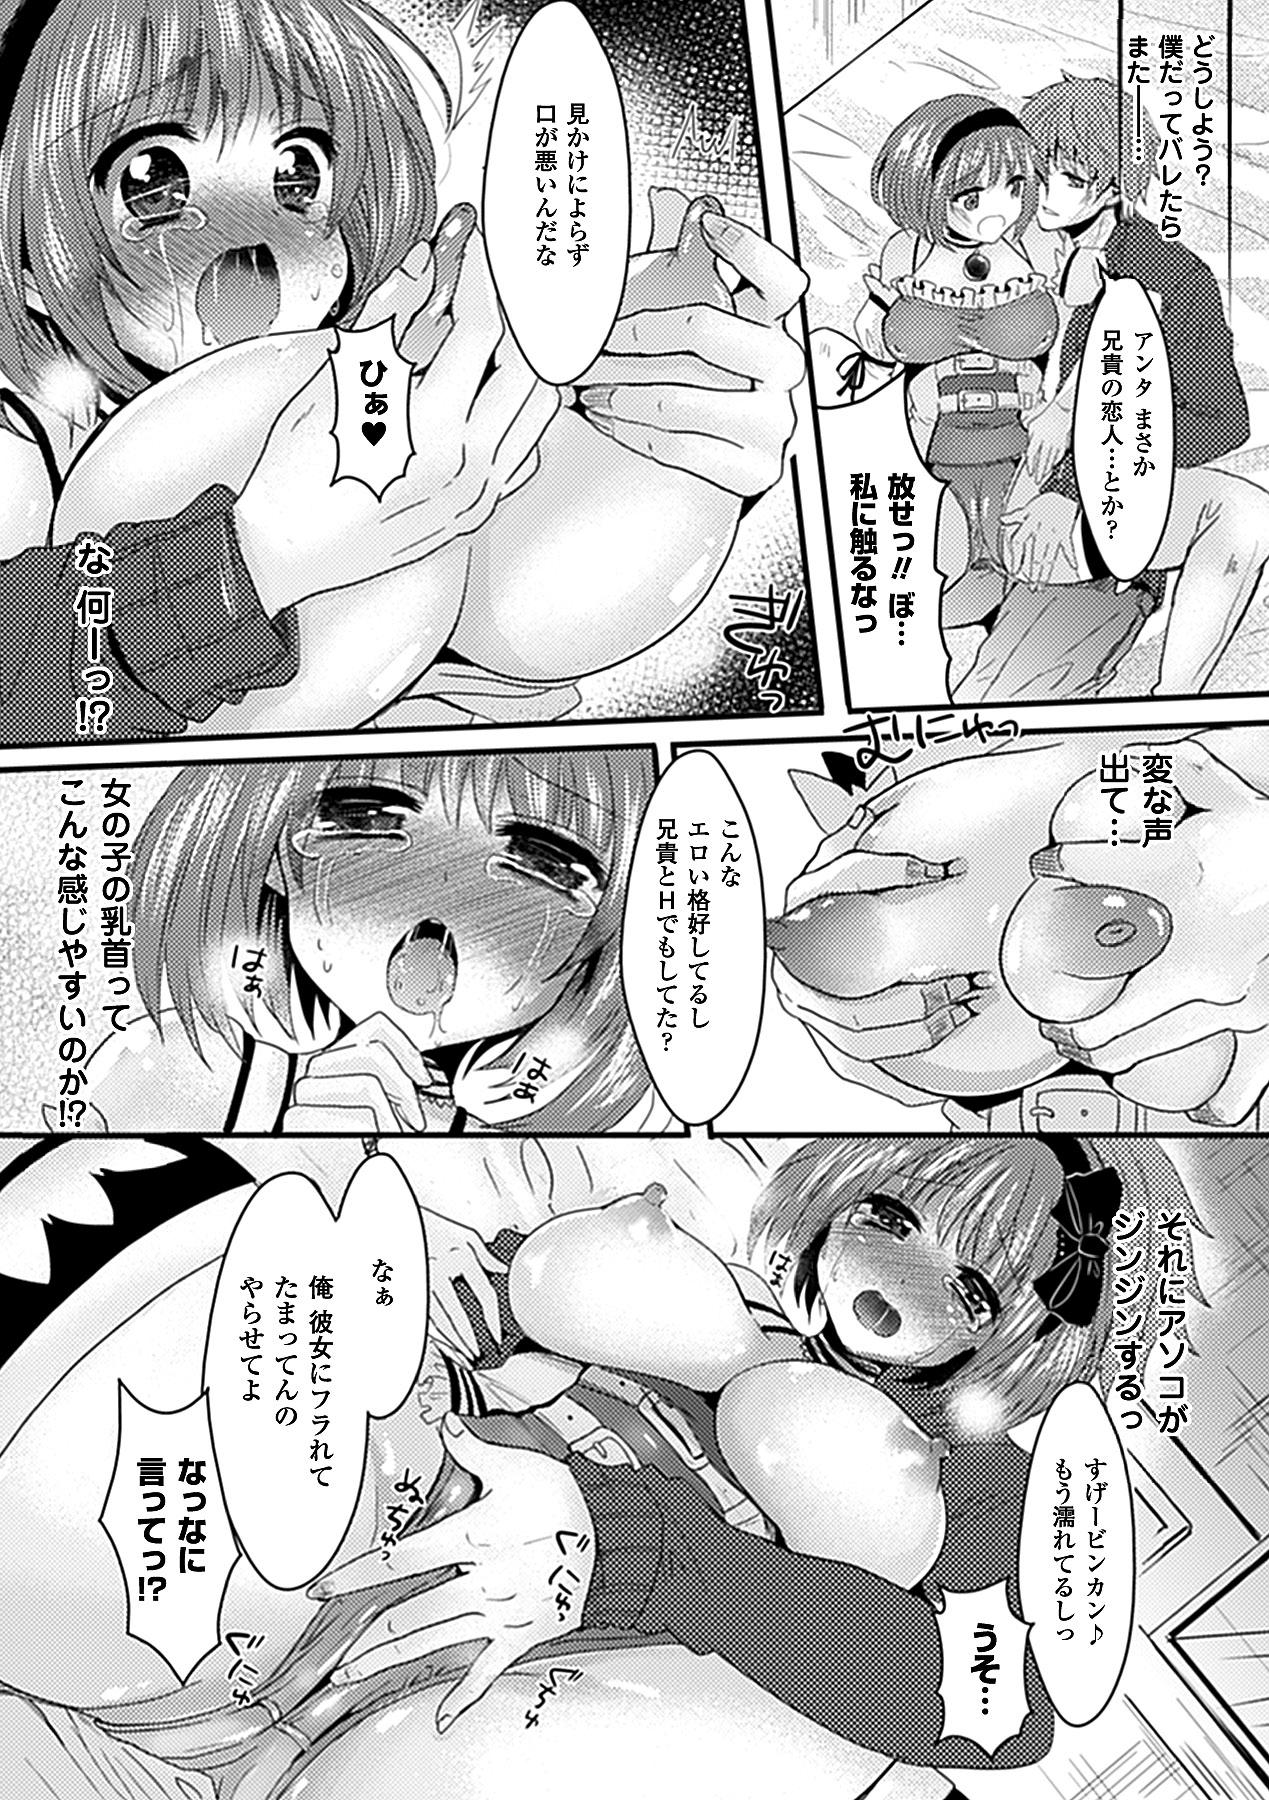 Bessatsu Comic Unreal Kawa wo Kite Ano Musume ni Narisumashi H Vol. 1 31